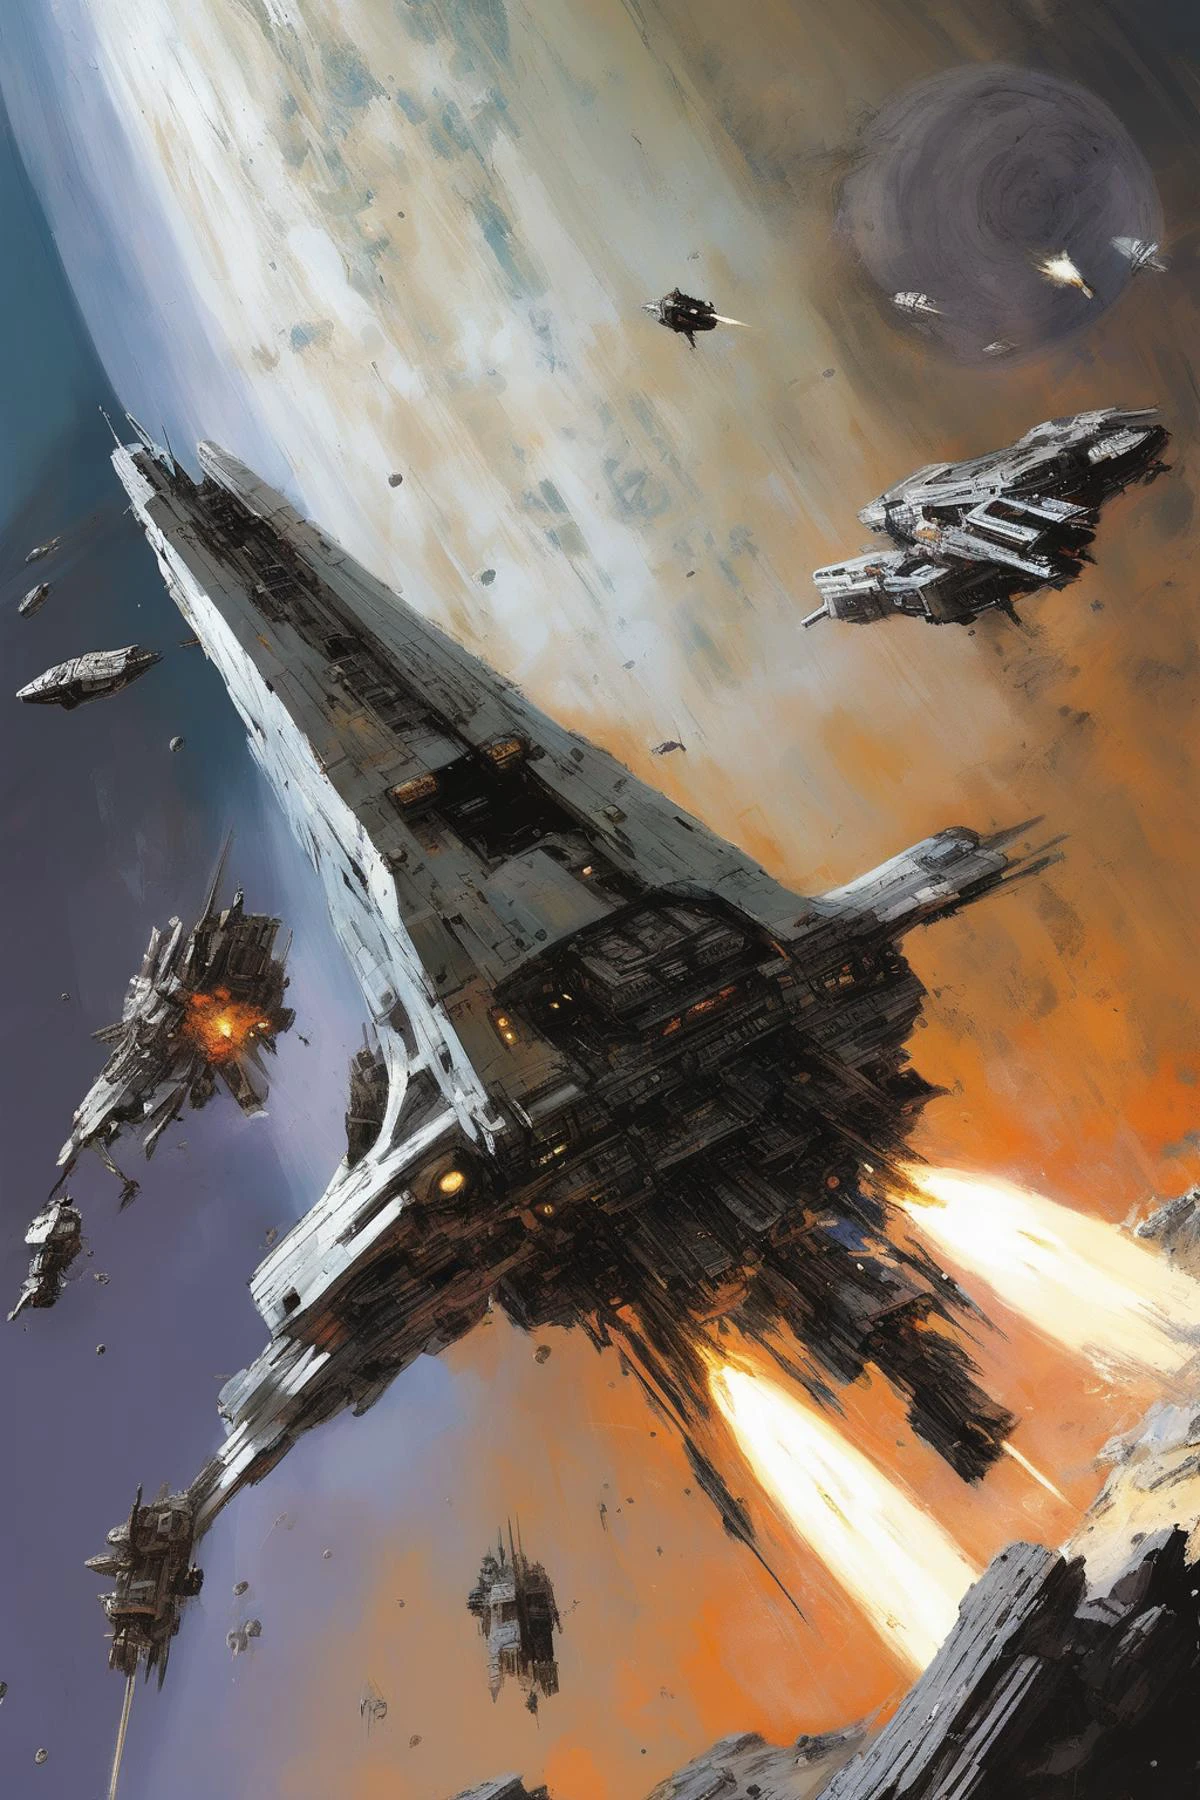 Estilo John Berkey: una nave espacial acorazada plateada dañada que dispara armas en una batalla espacial masiva, frente a un planeta que se desmorona al estilo de john berkey en perspectiva de tres cuartos